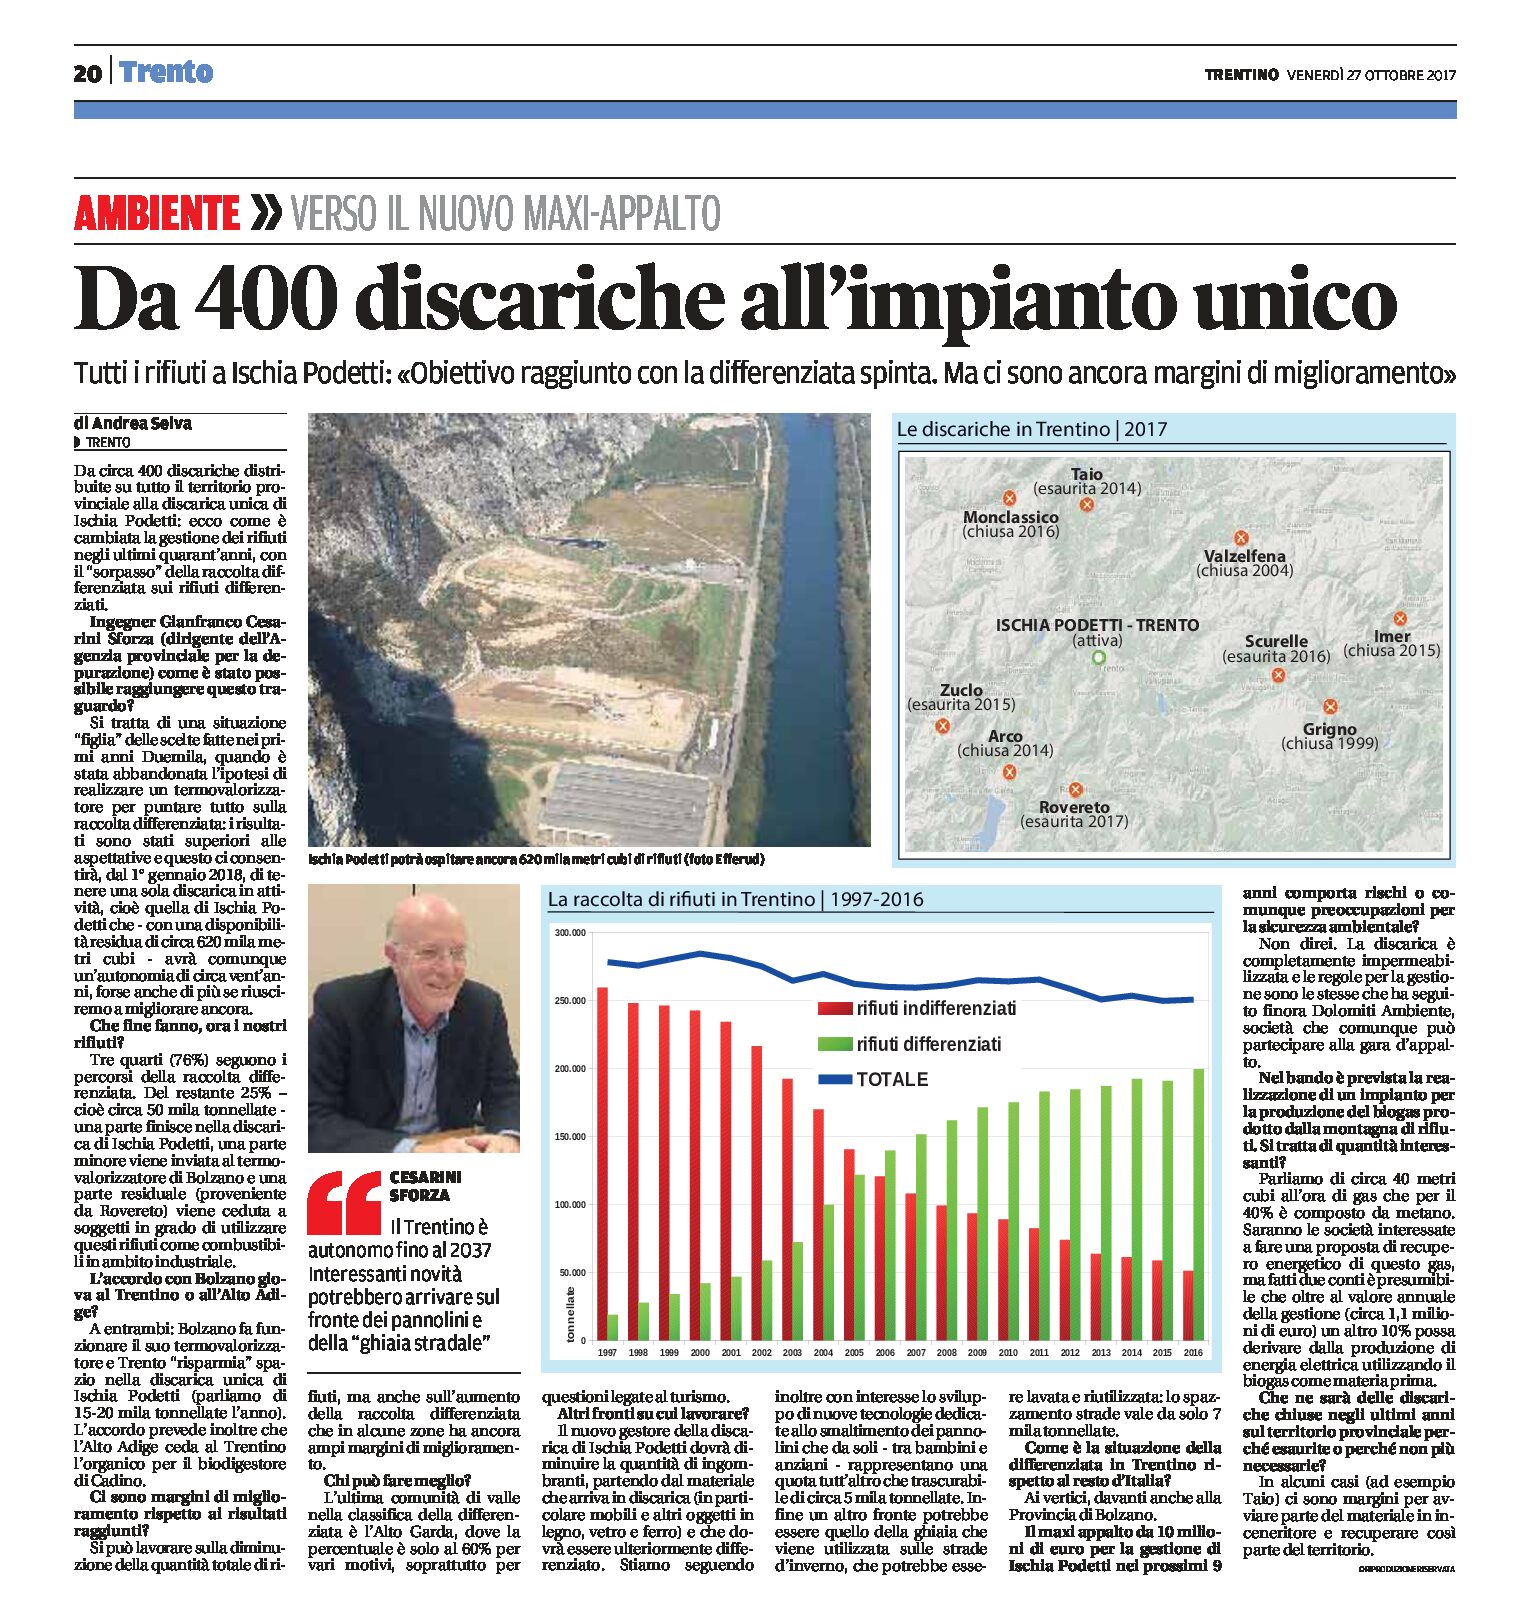 Trento, Ischia Podetti: da 400 discariche all’impianto unico